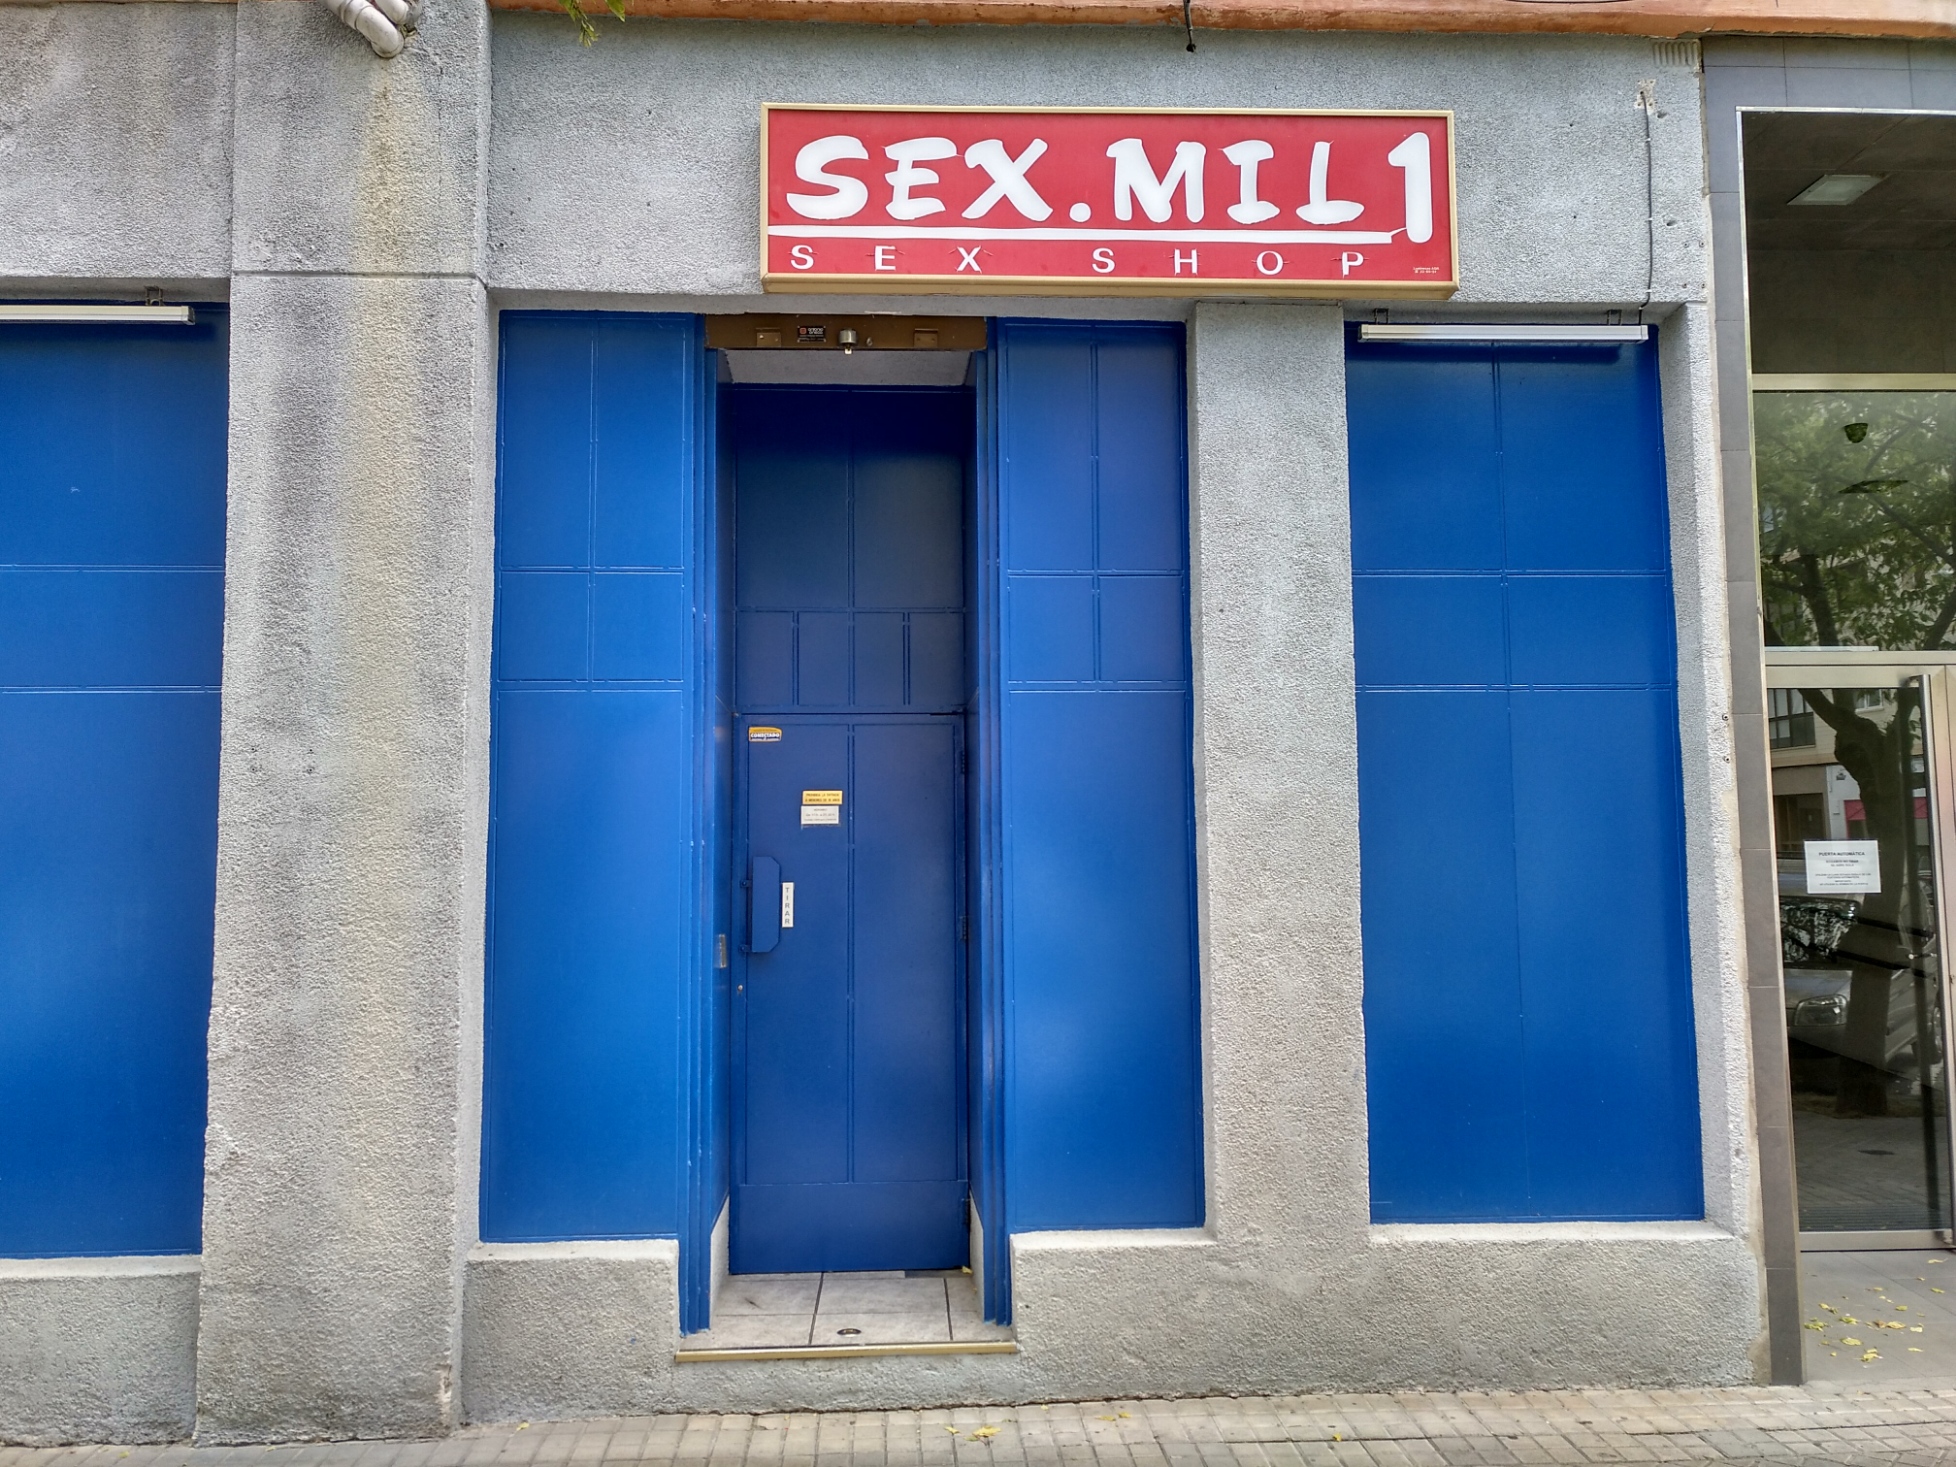 Images Sex Shop Sex Mil 1